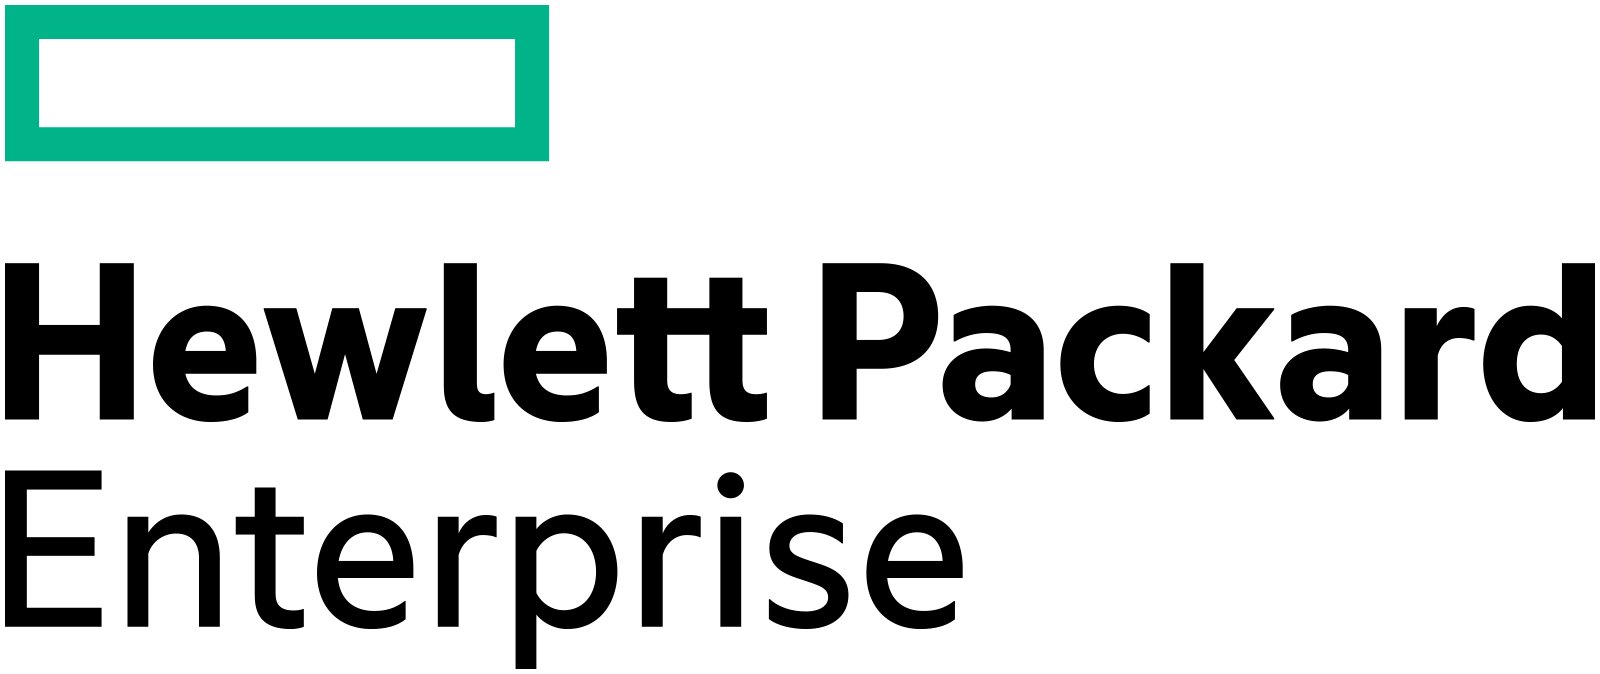 HPE Logo Large